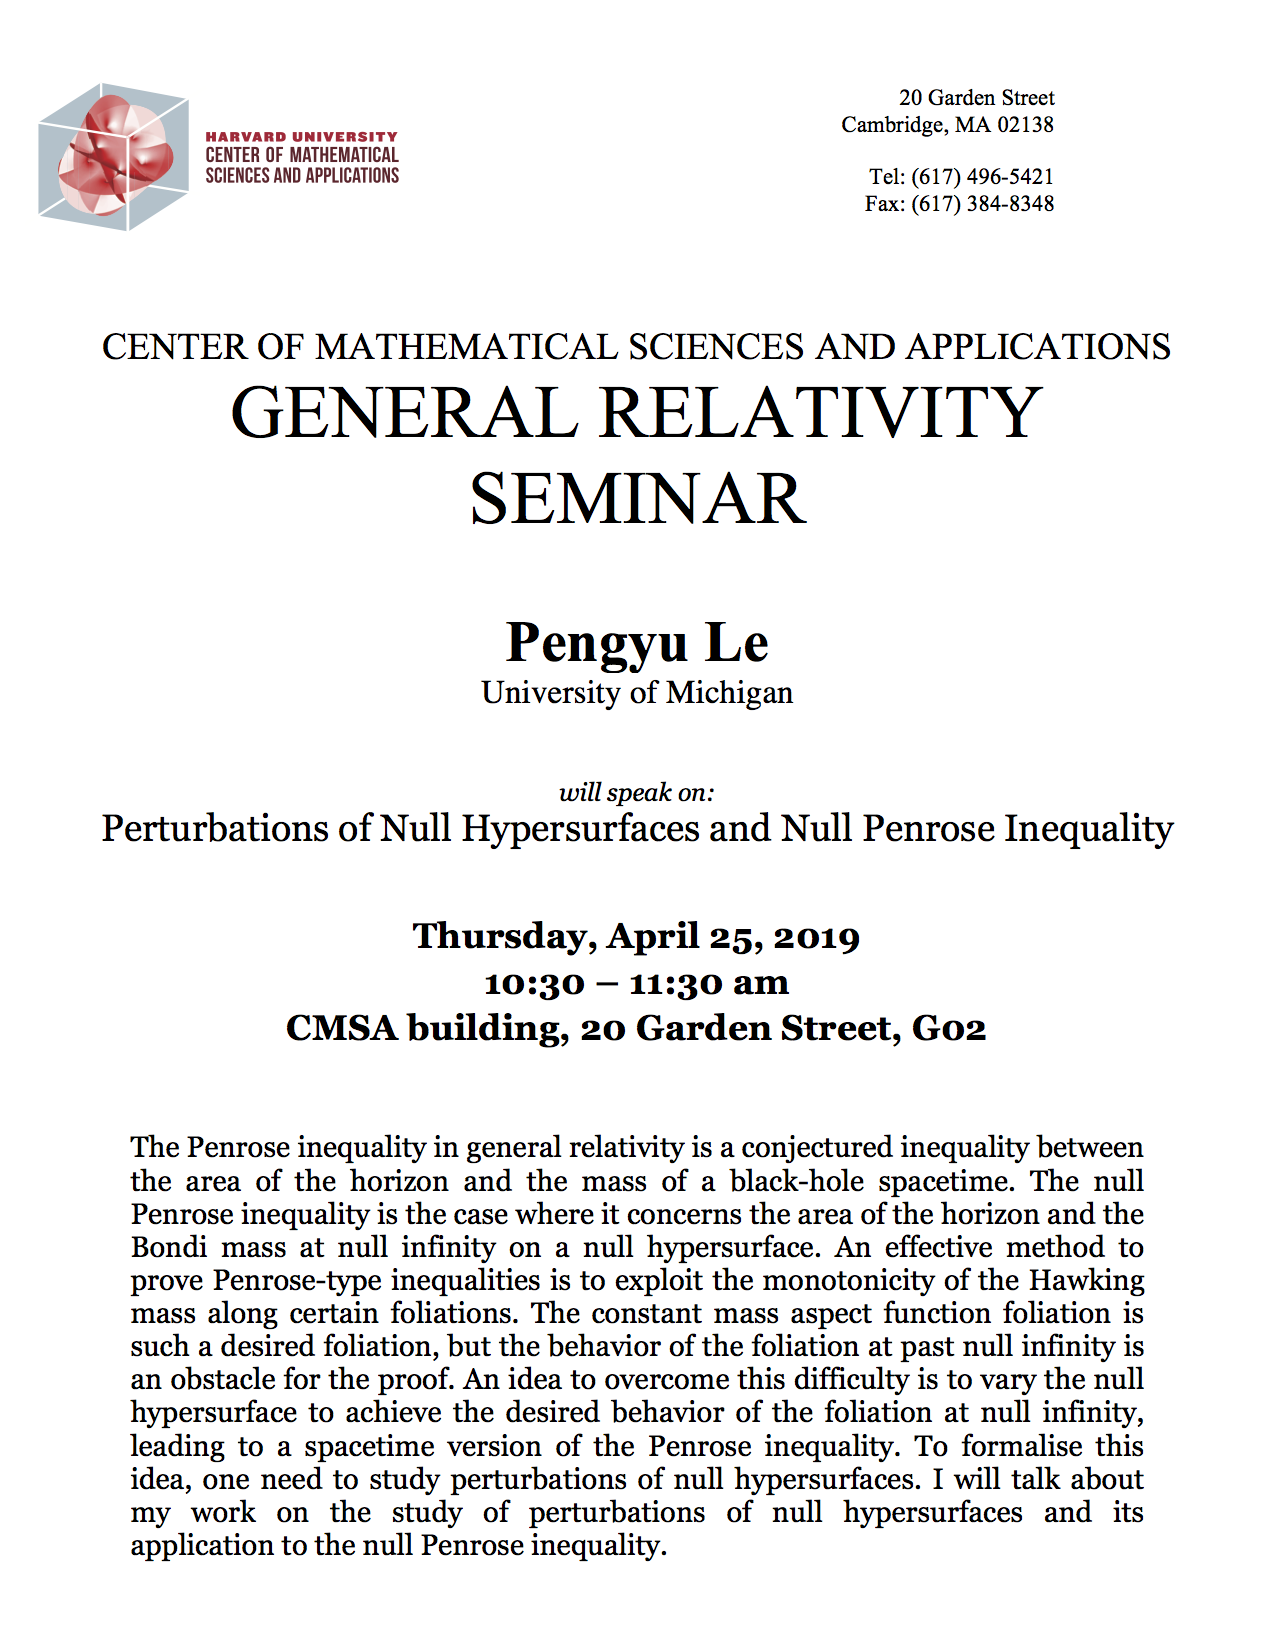 4/25/2019 General Relativity Seminar